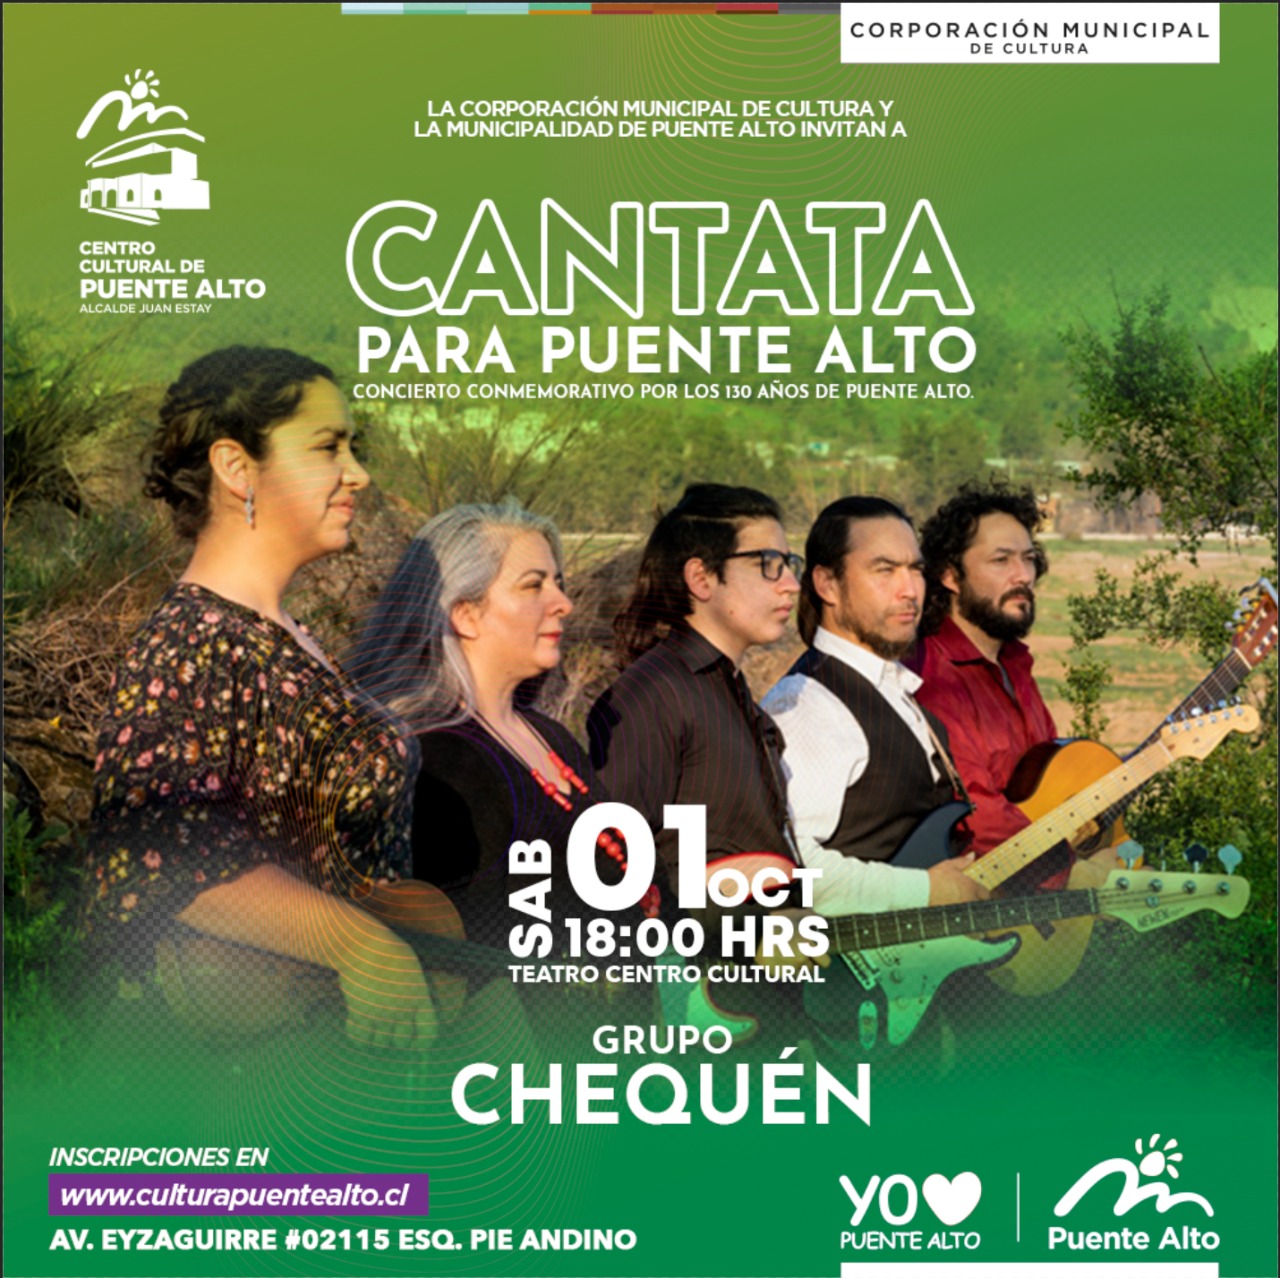 (Video)│»Cantata para el Pueblo de Puente Alto»: Evento conmemoración de los 130 años de Puente Alto se estrena el próximo 1 de octubre